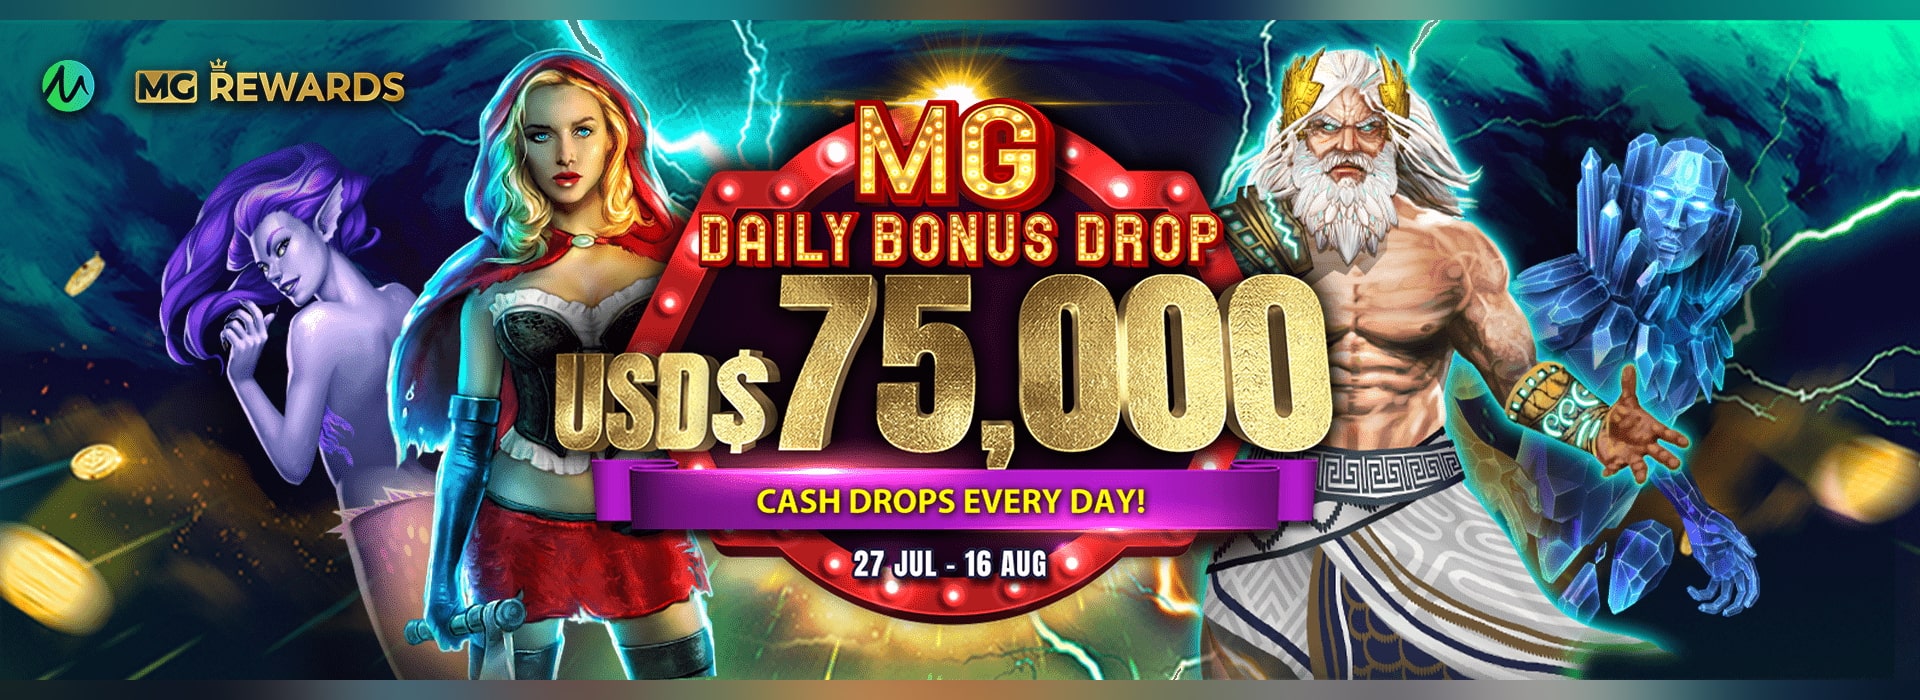 MG Daily Bonus Drop